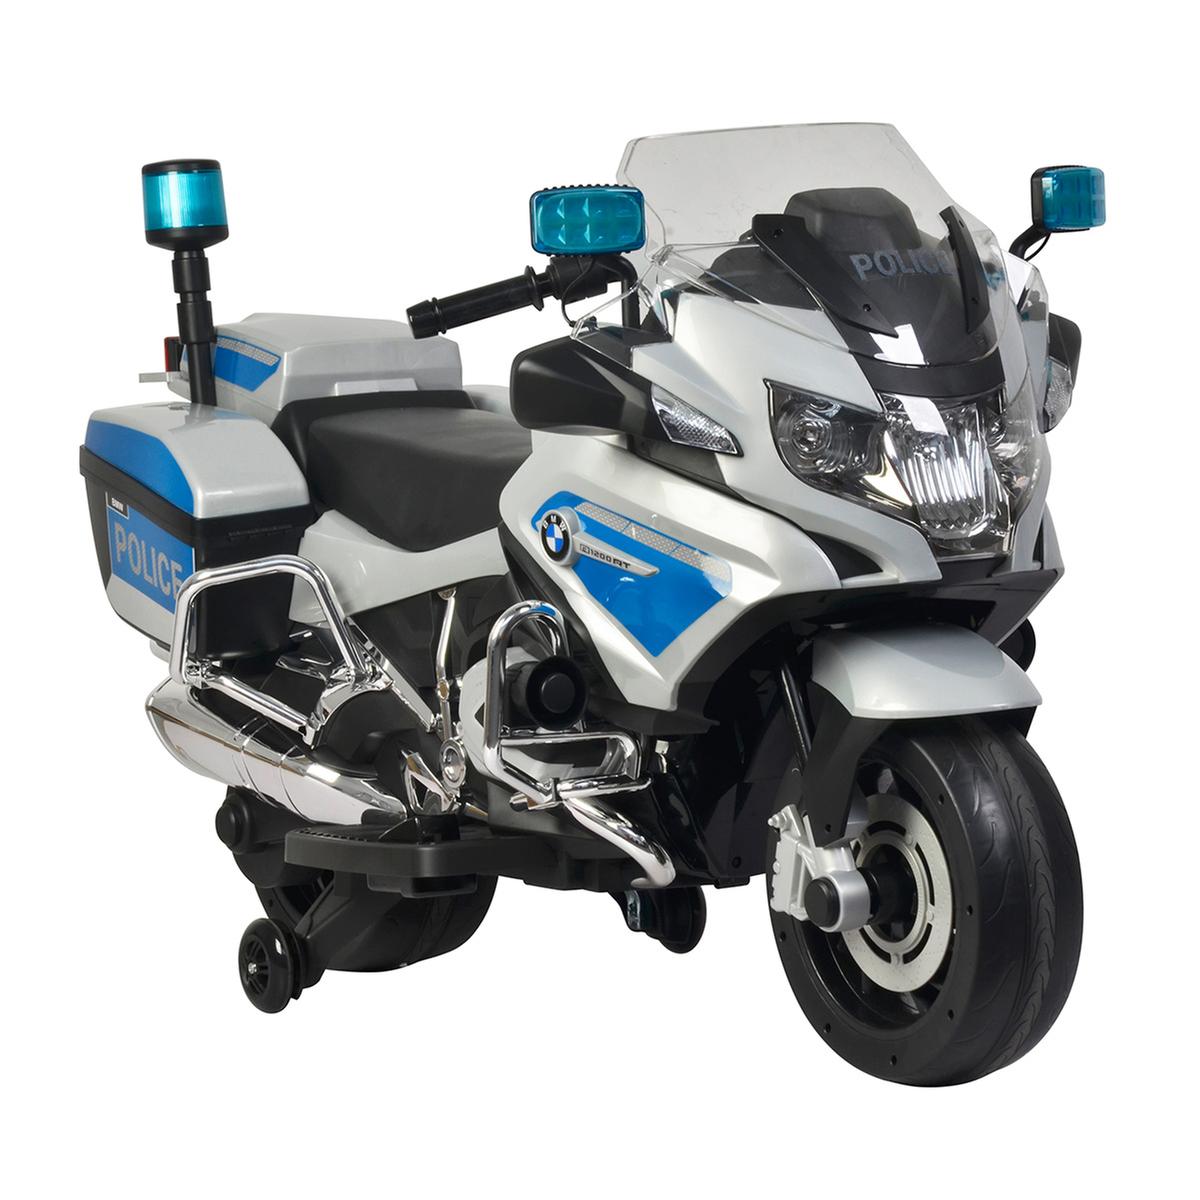 Moto de Policía BMW R1200R 6V | Toys R' Us | Toys"R"Us España